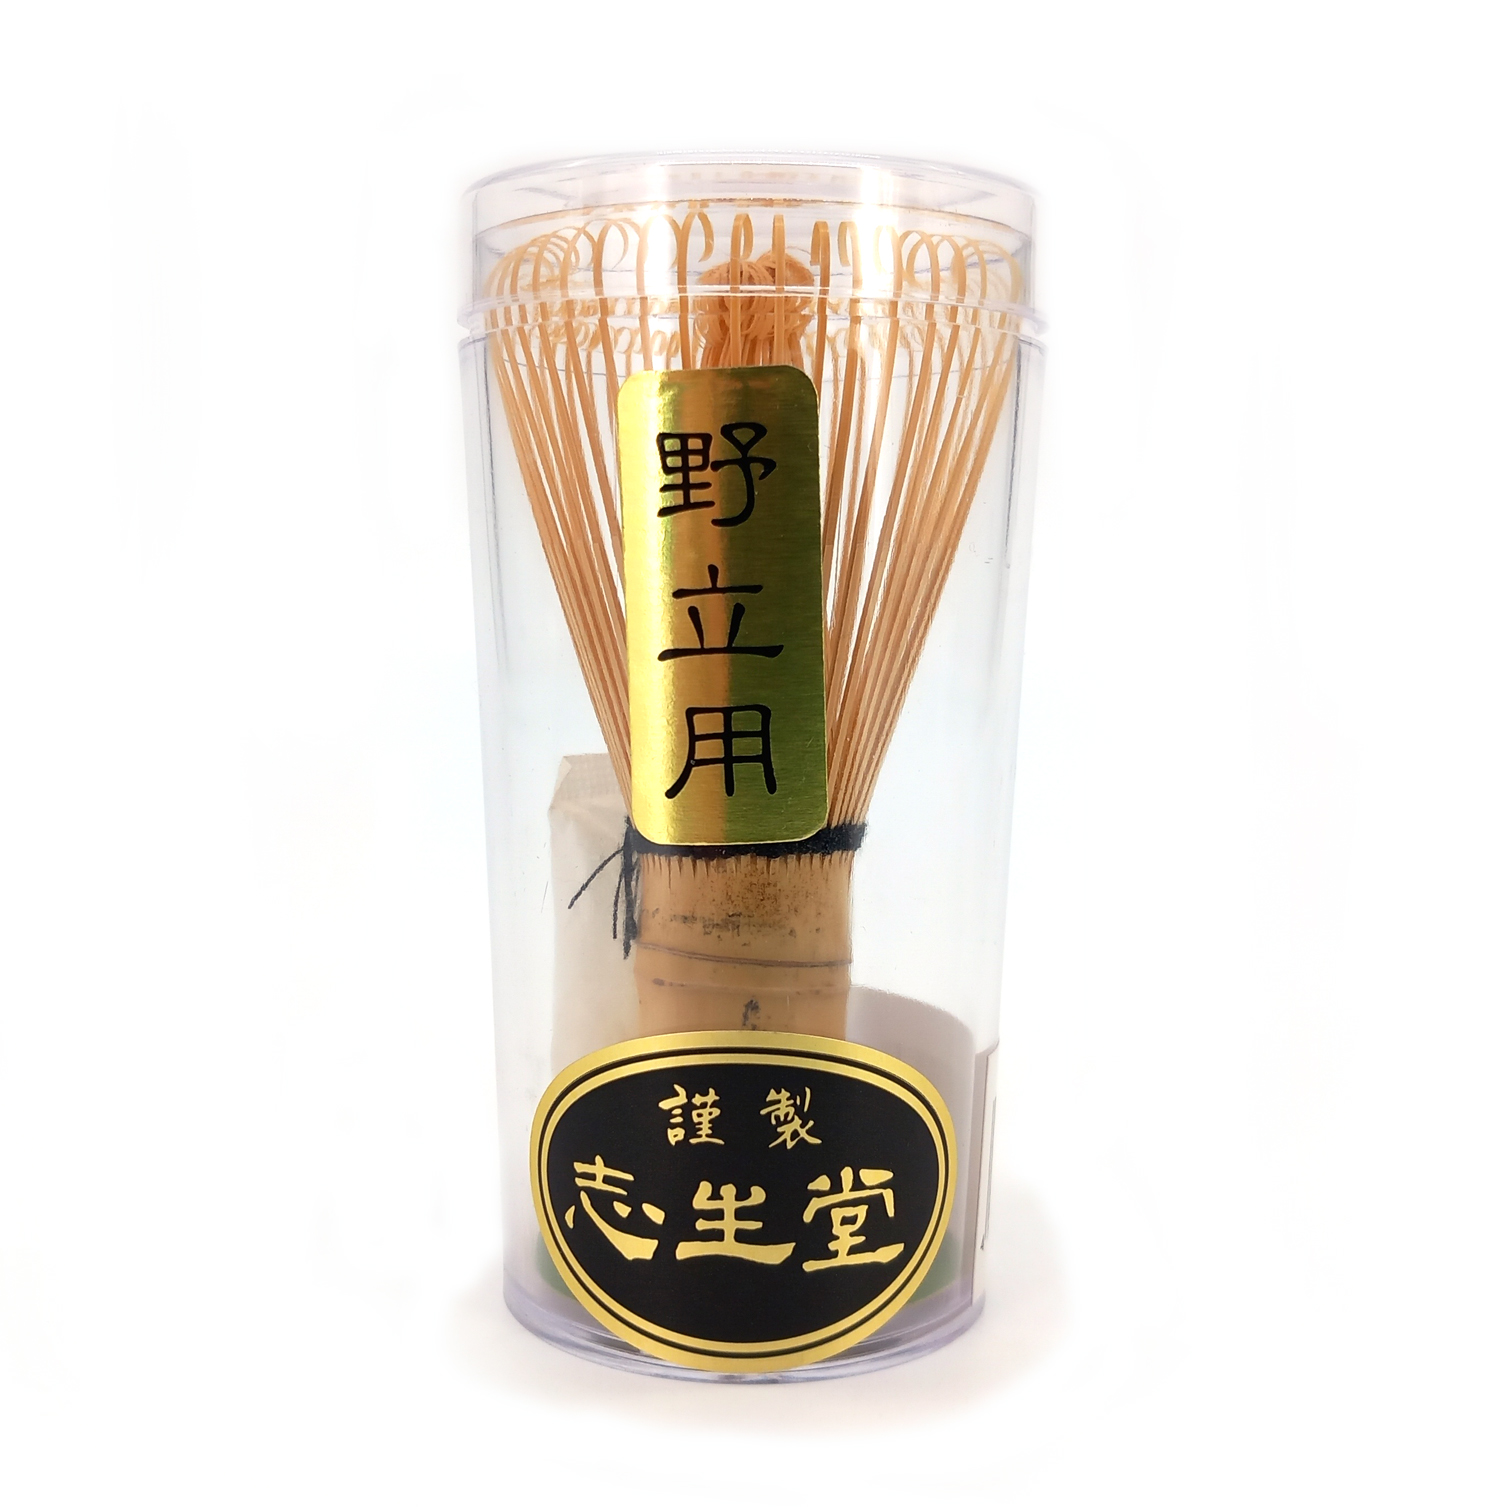 Batidor té matcha chasen de bambú